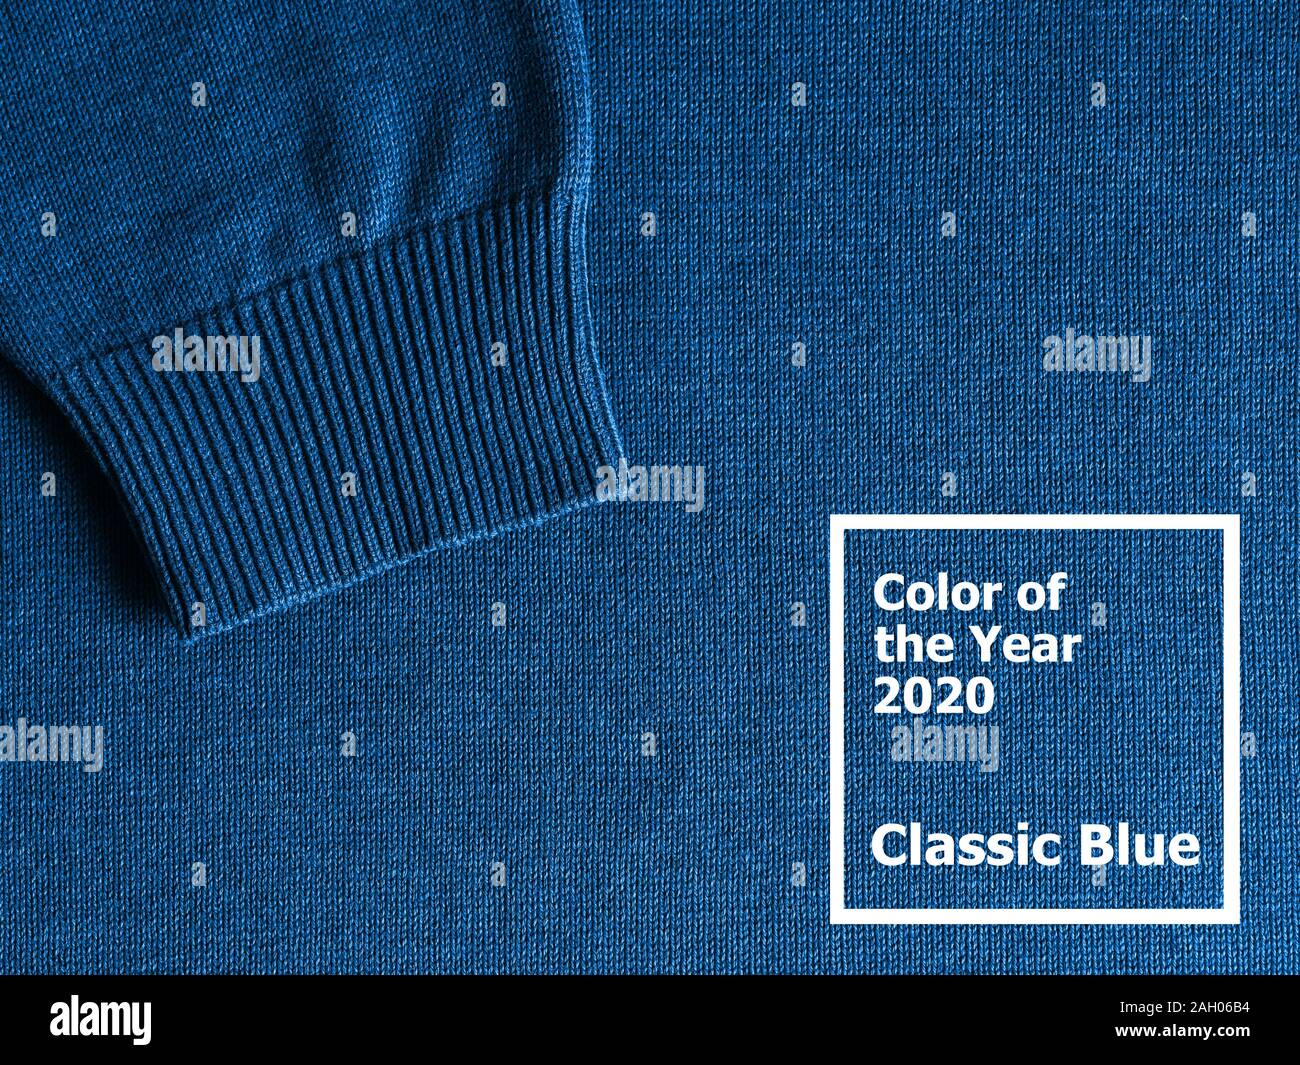 Pullover in classic blue 2020 Farbe. Farbe des Jahres Konzept 2020 für die Mode- und Bekleidungsindustrie Stockfoto